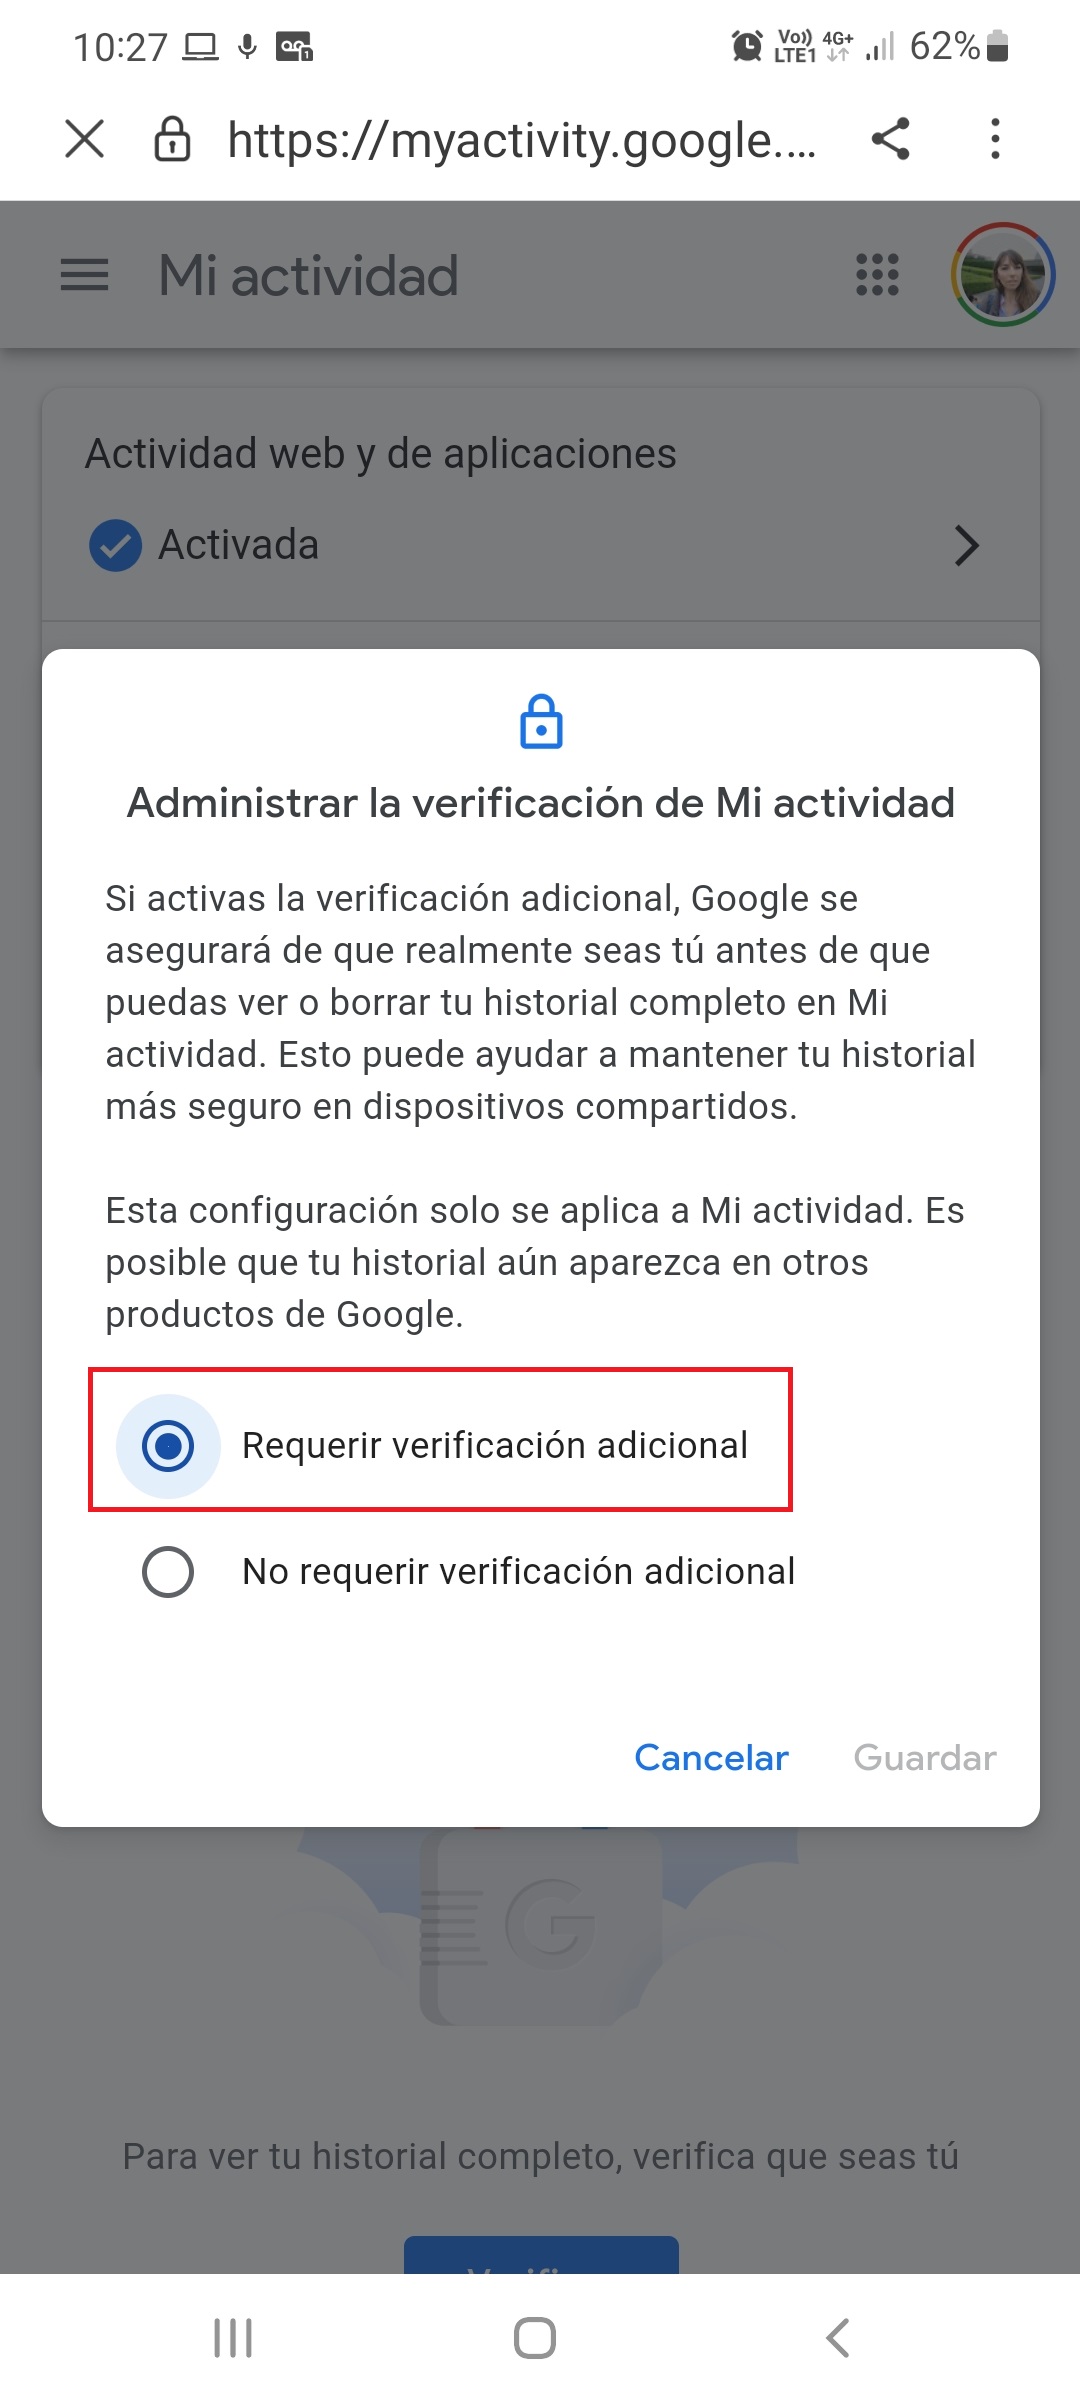 Mi Actividad de Google permite gestionar la seguridad de la cuenta